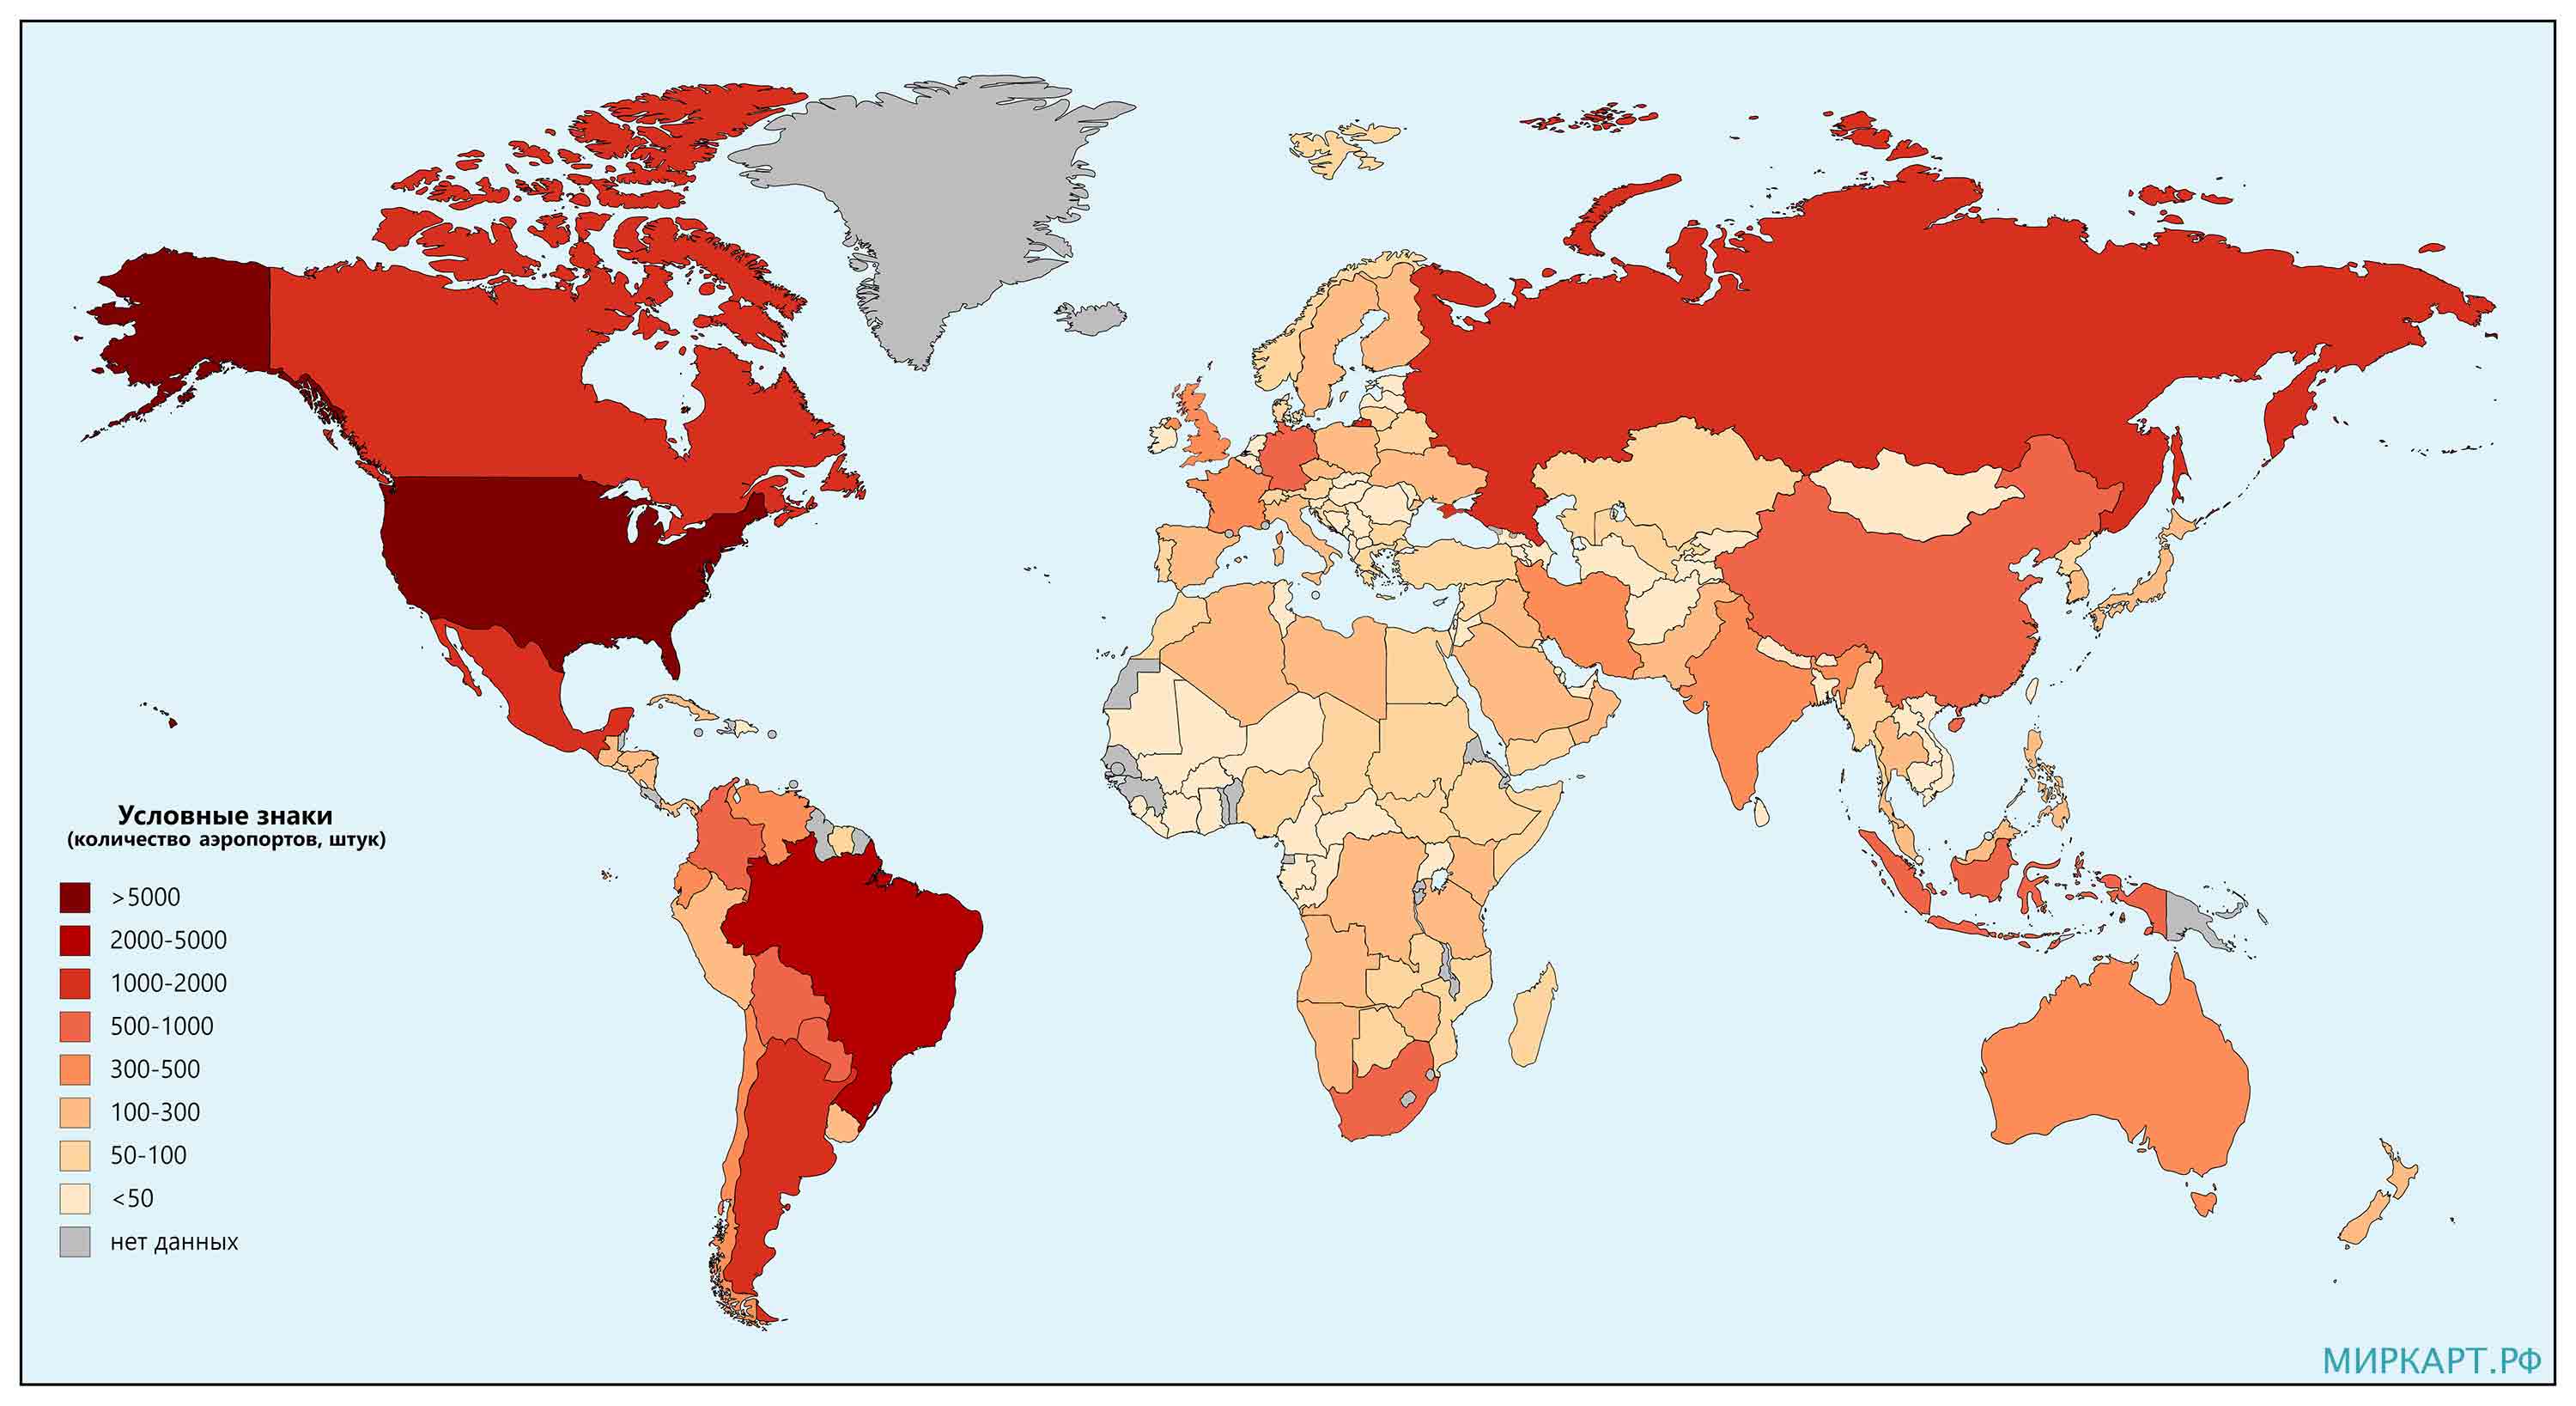 Карта количества аэропортов в мире